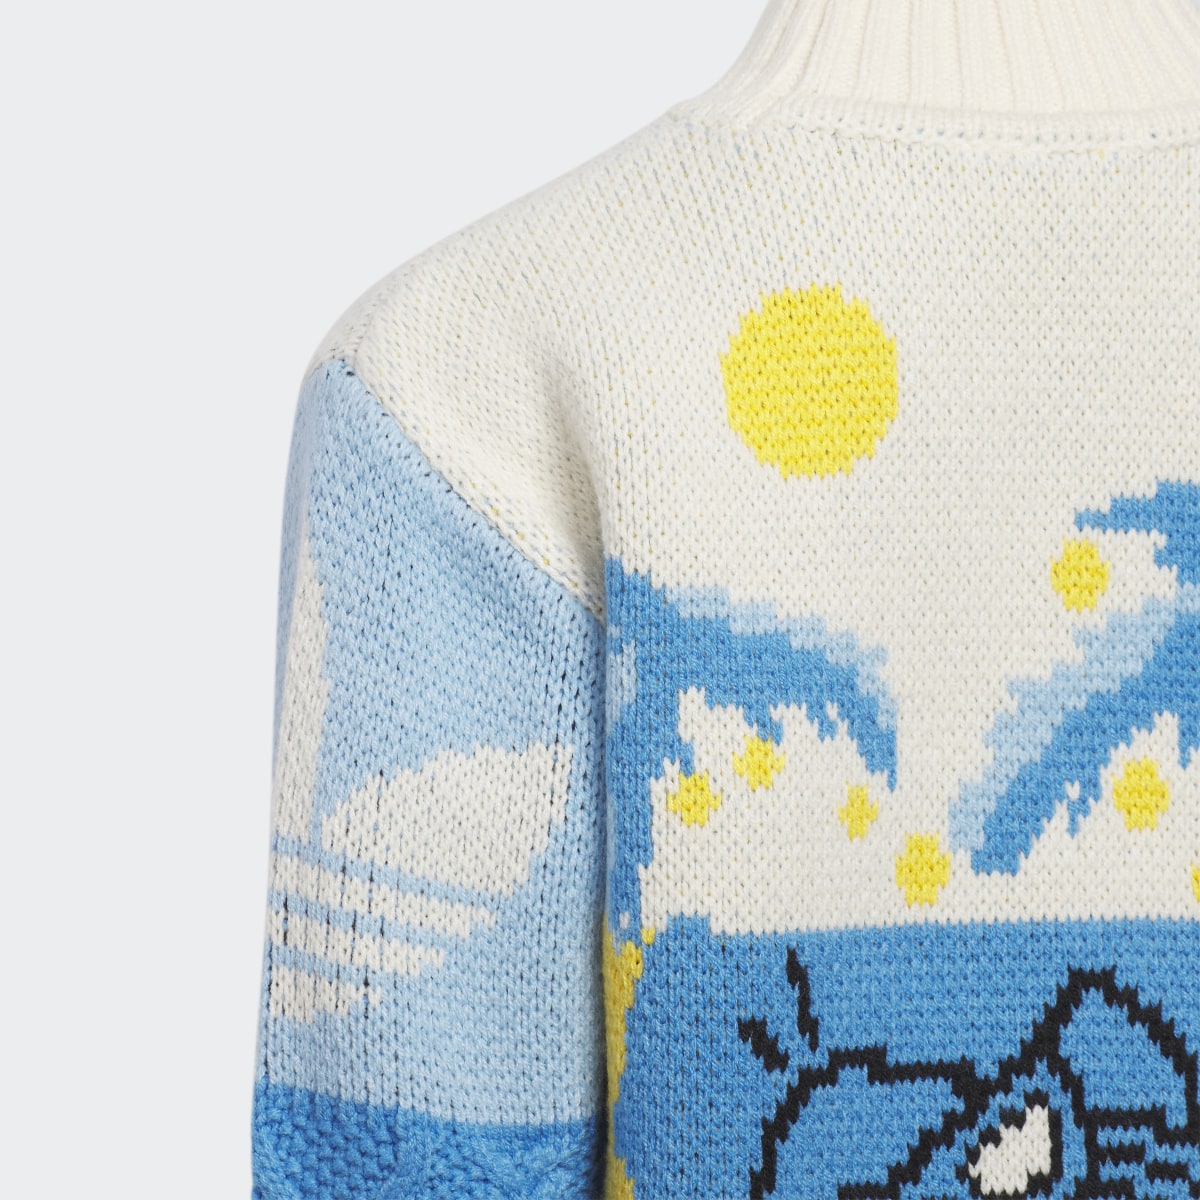 Adidas Xmas Sweater. 4